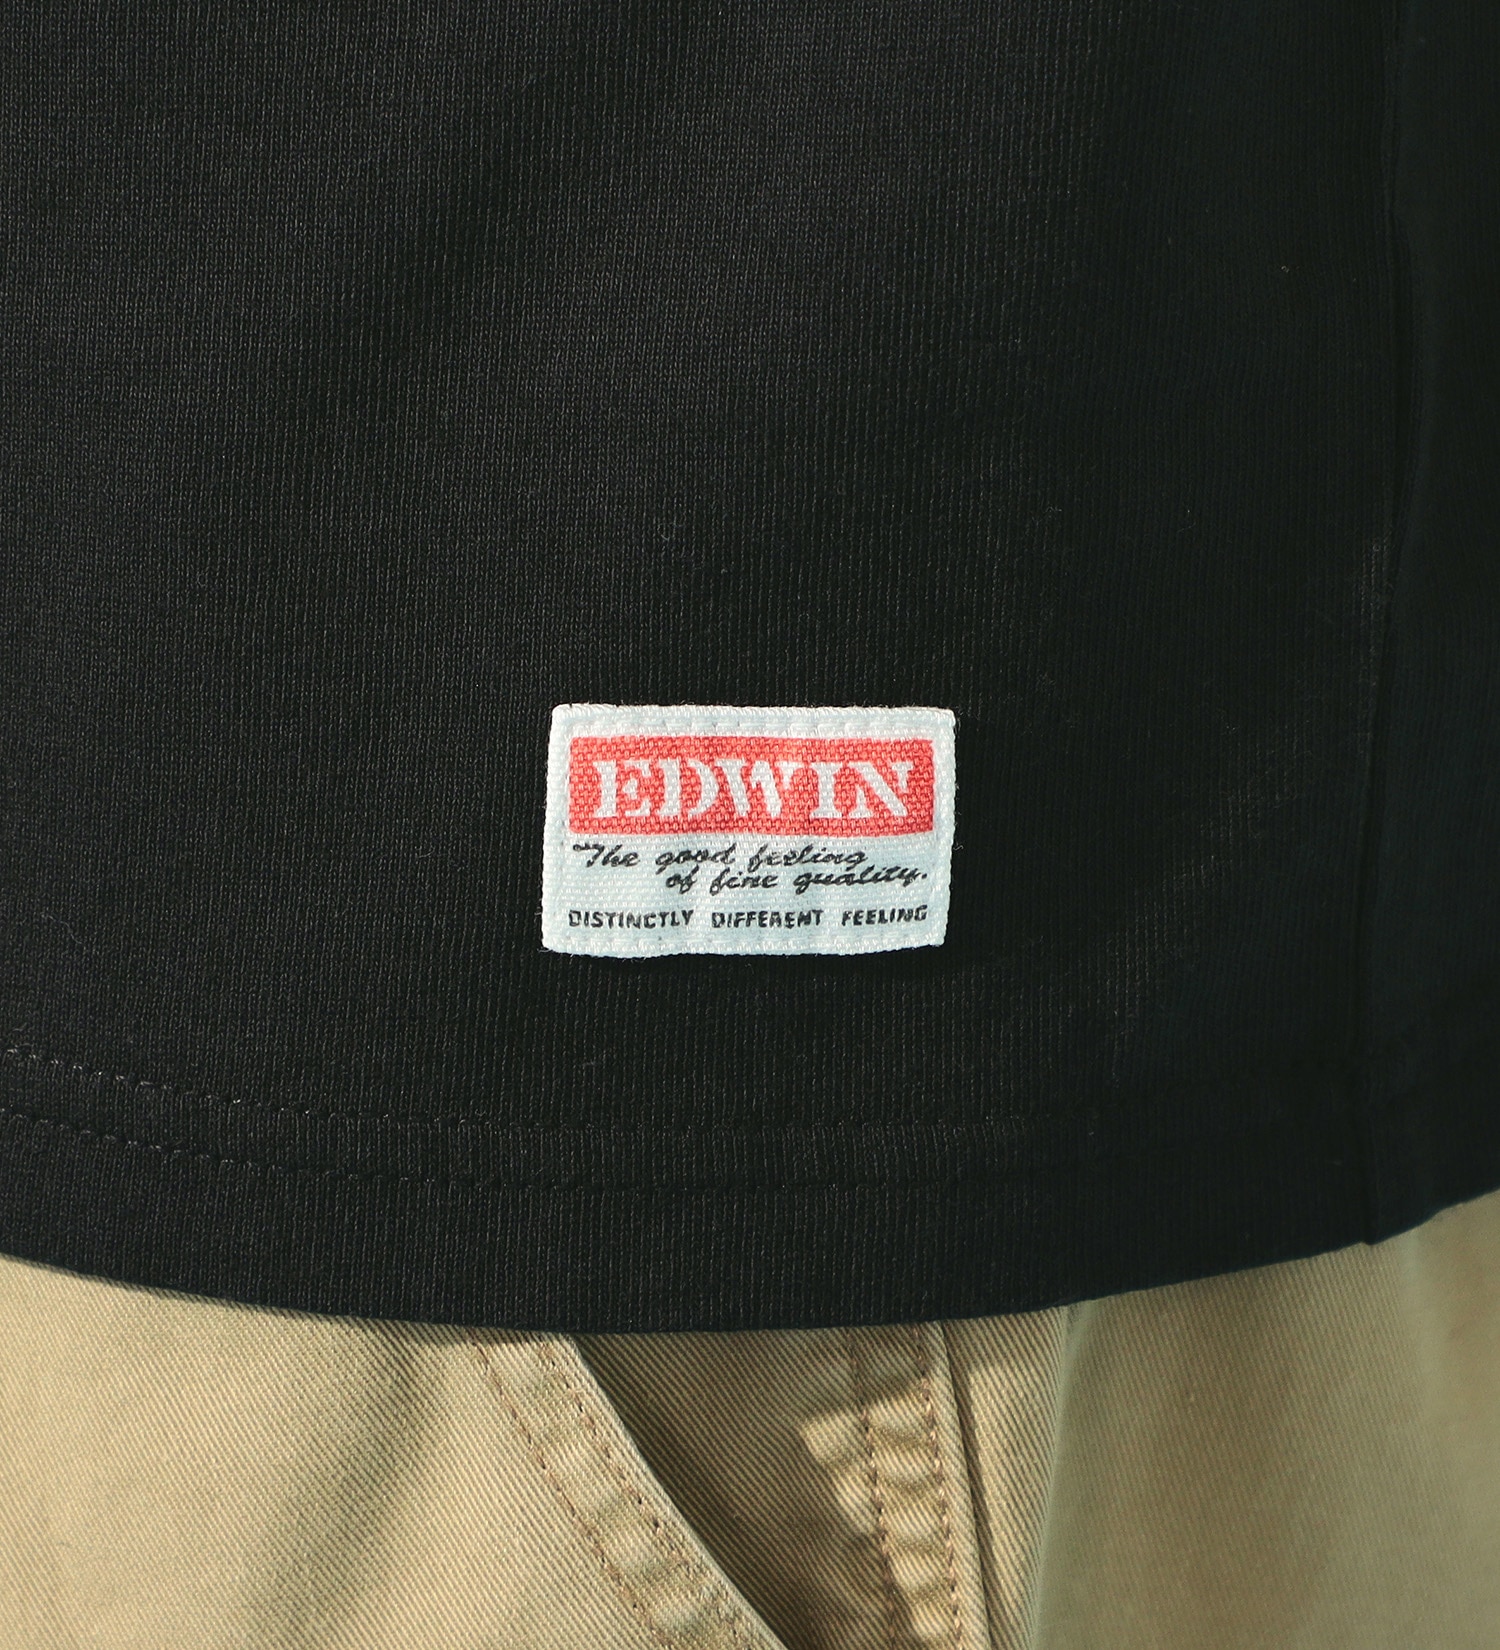 EDWIN(エドウイン)のEDWIN 半袖ルーズフィットTシャツ|トップス/Tシャツ/カットソー/メンズ|ブラック